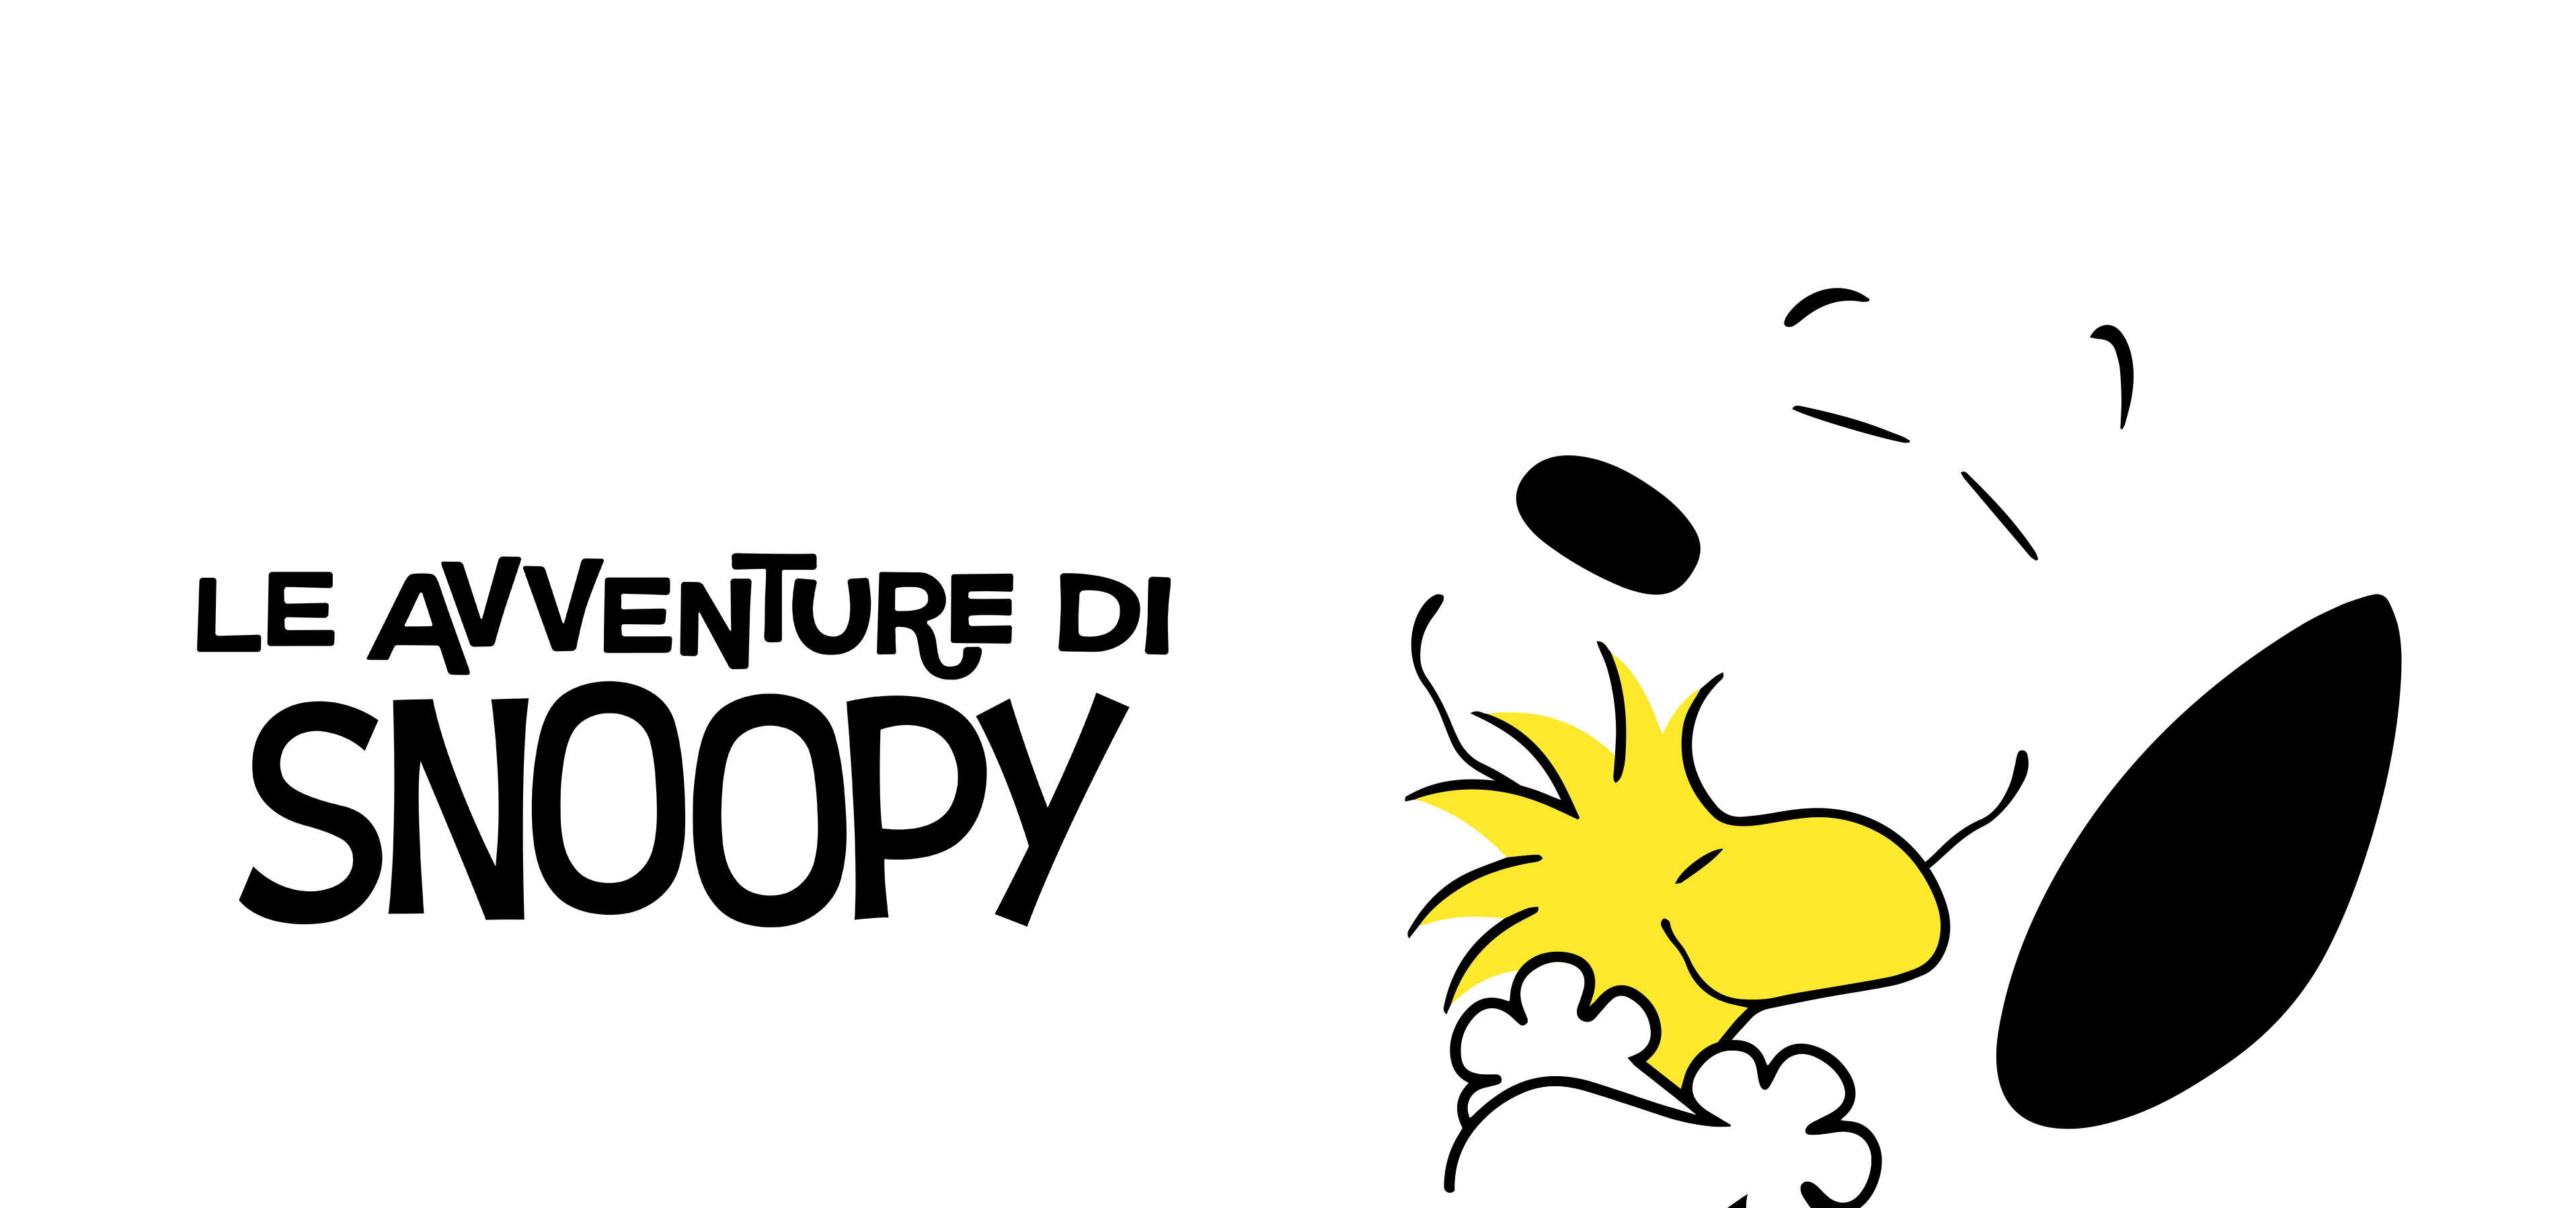 Snoopy, pubblicato il trailer della seconda stagione